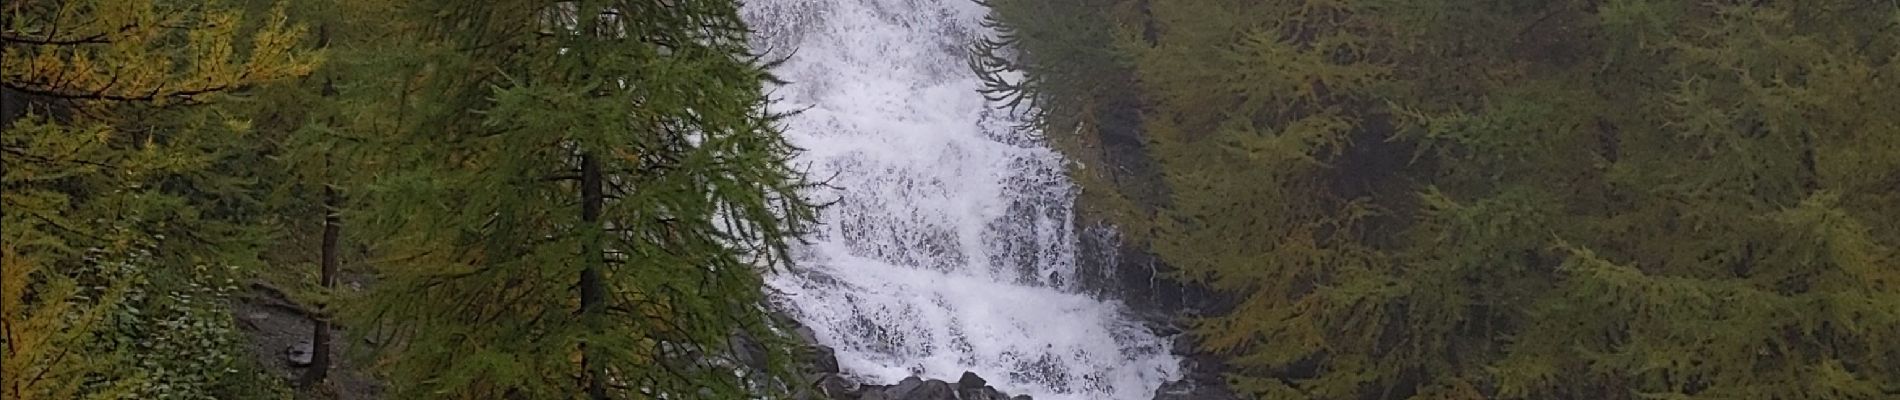 Percorso Marcia Puy-Saint-Vincent - les cascades depuis l'Aigliere 05 10 21 - Photo